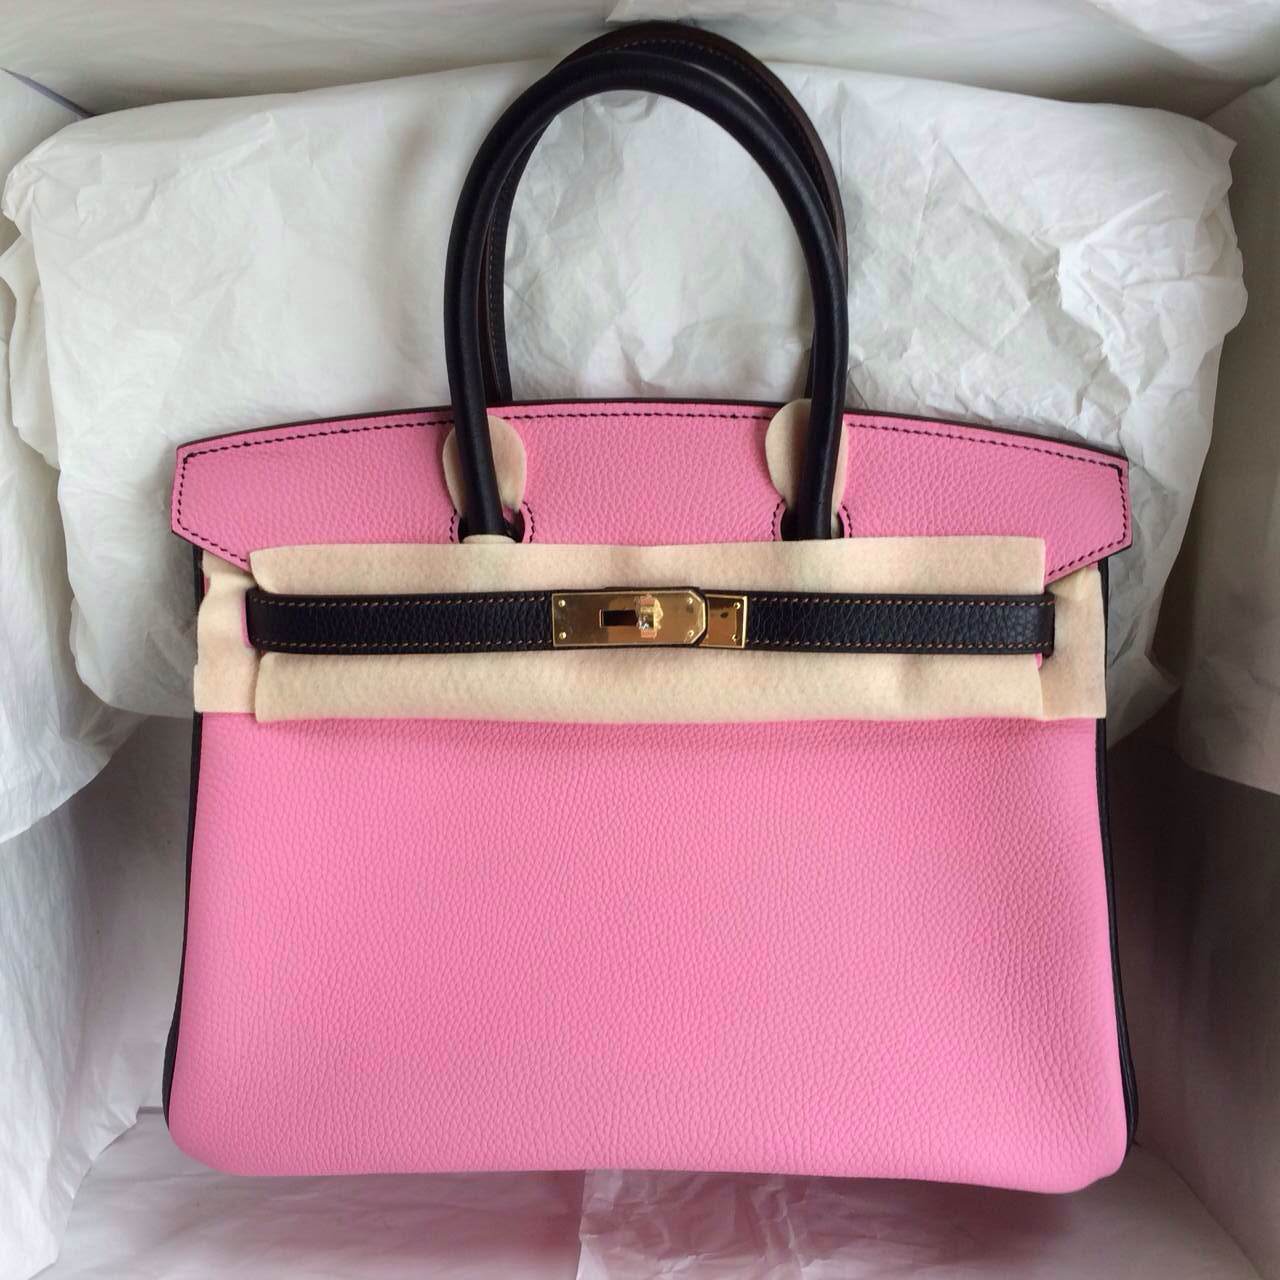 5P Pink/Black France Togo Leather Hermes Birkin Bag Gold Hardware — Hermes Crocodile Birkin Bag